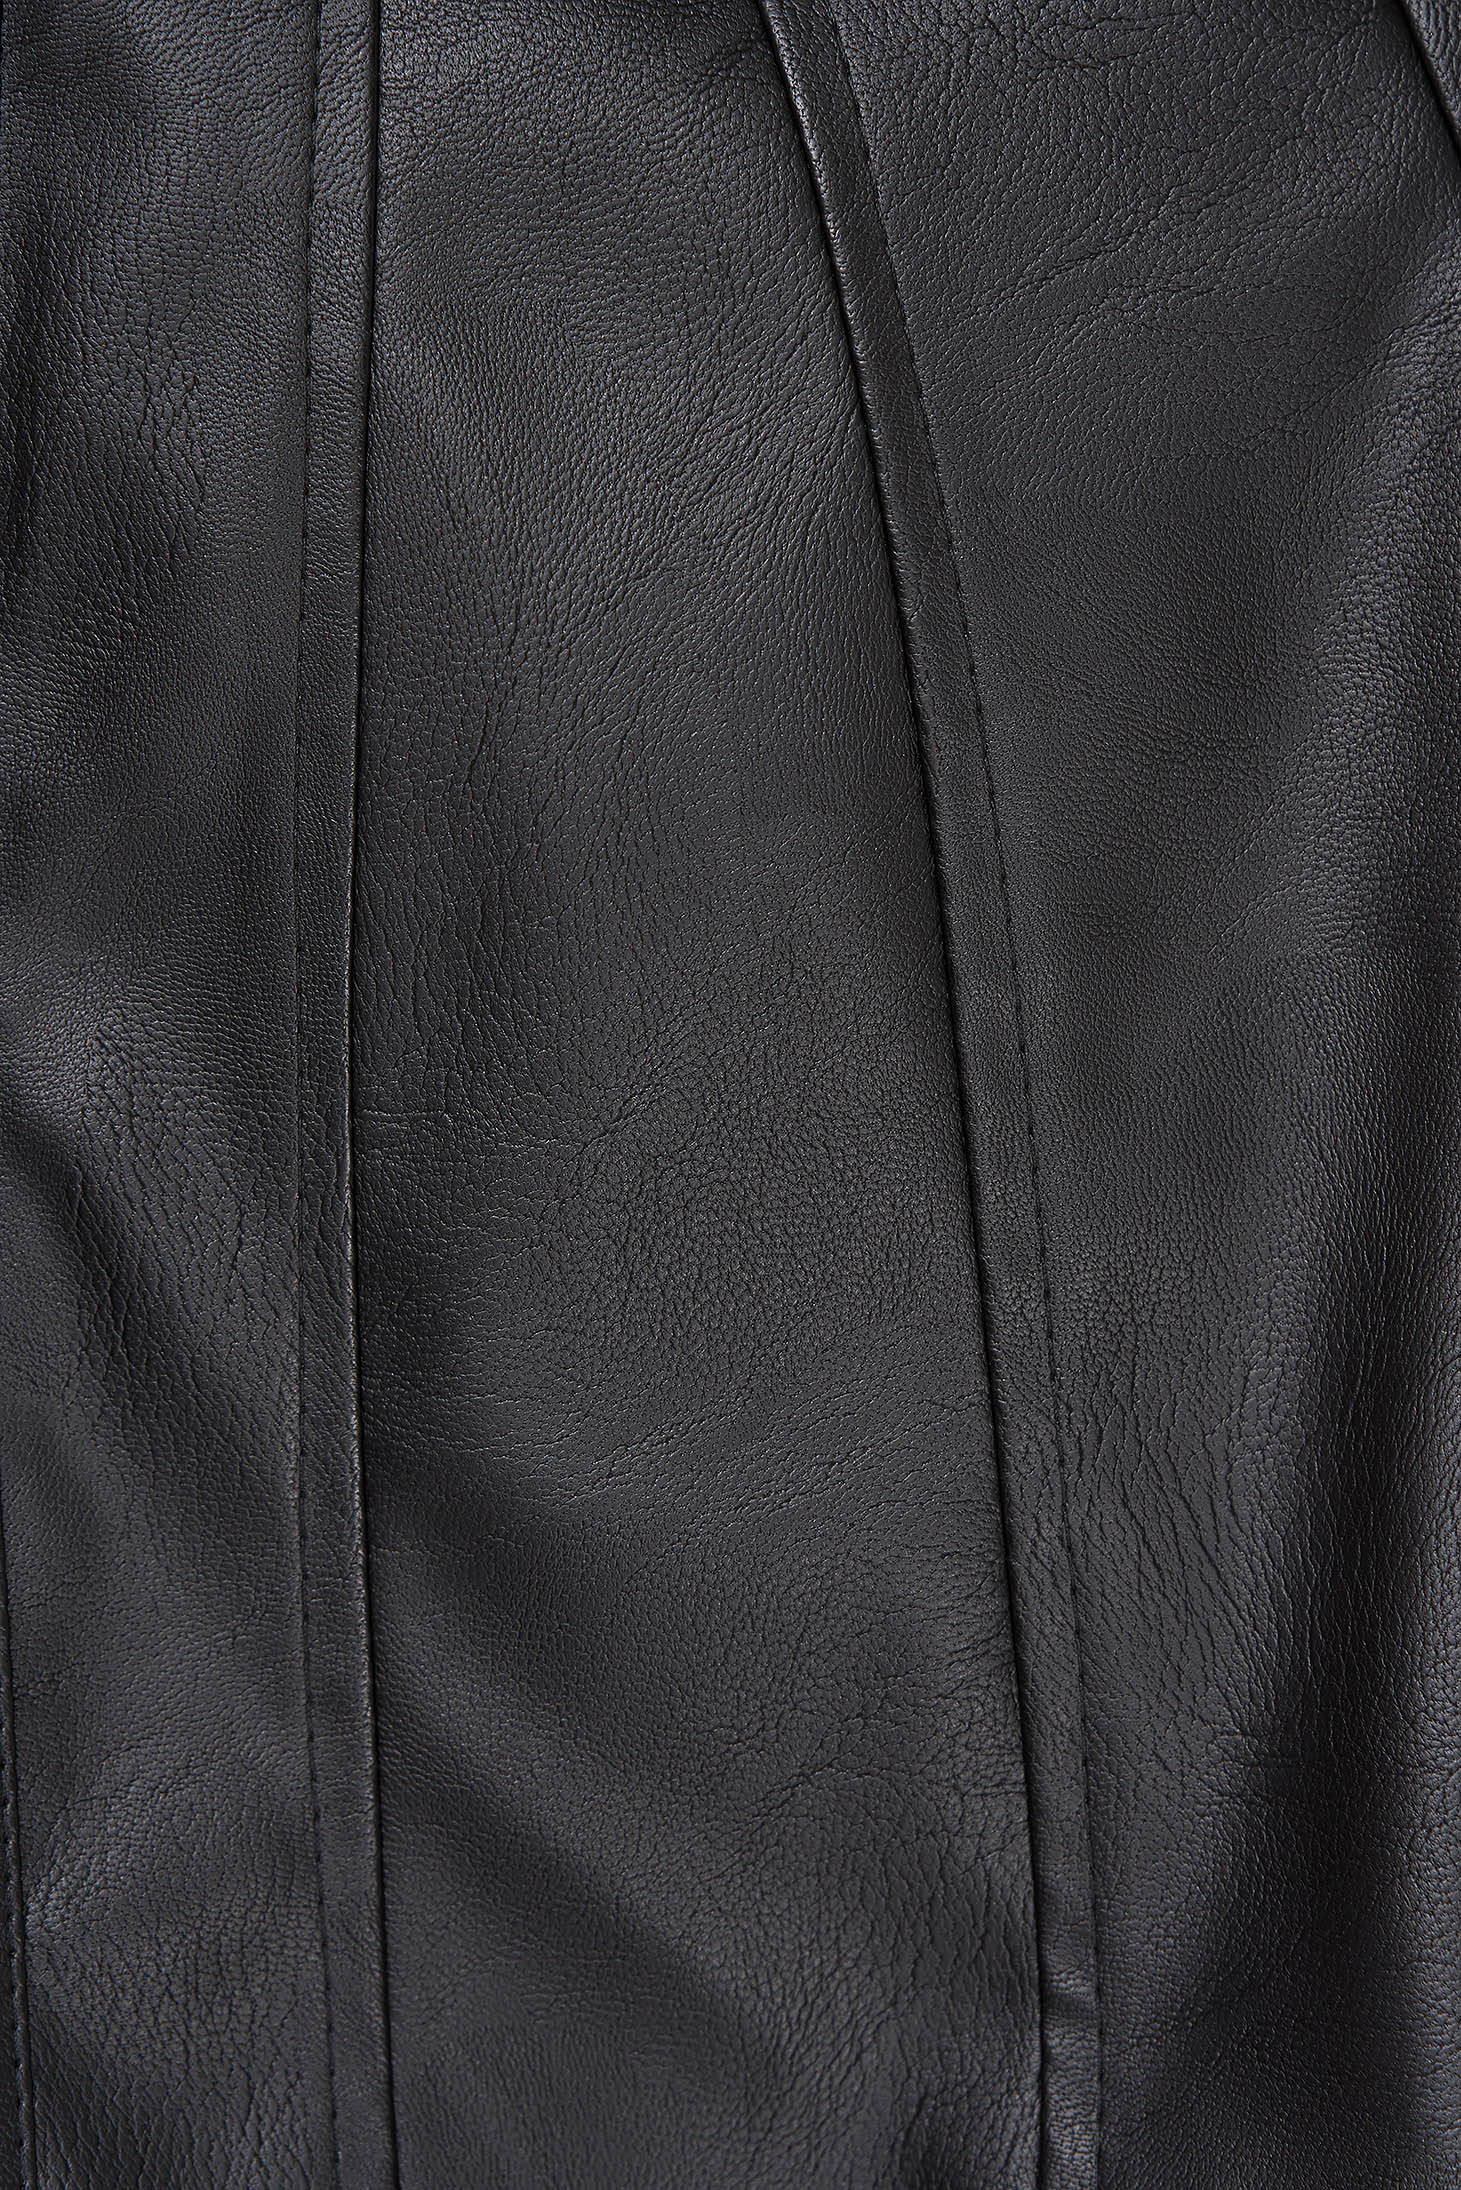 Műbőr vékony anyagú blézer - fekete, szűkített, bélés nélküli 5 - StarShinerS.hu